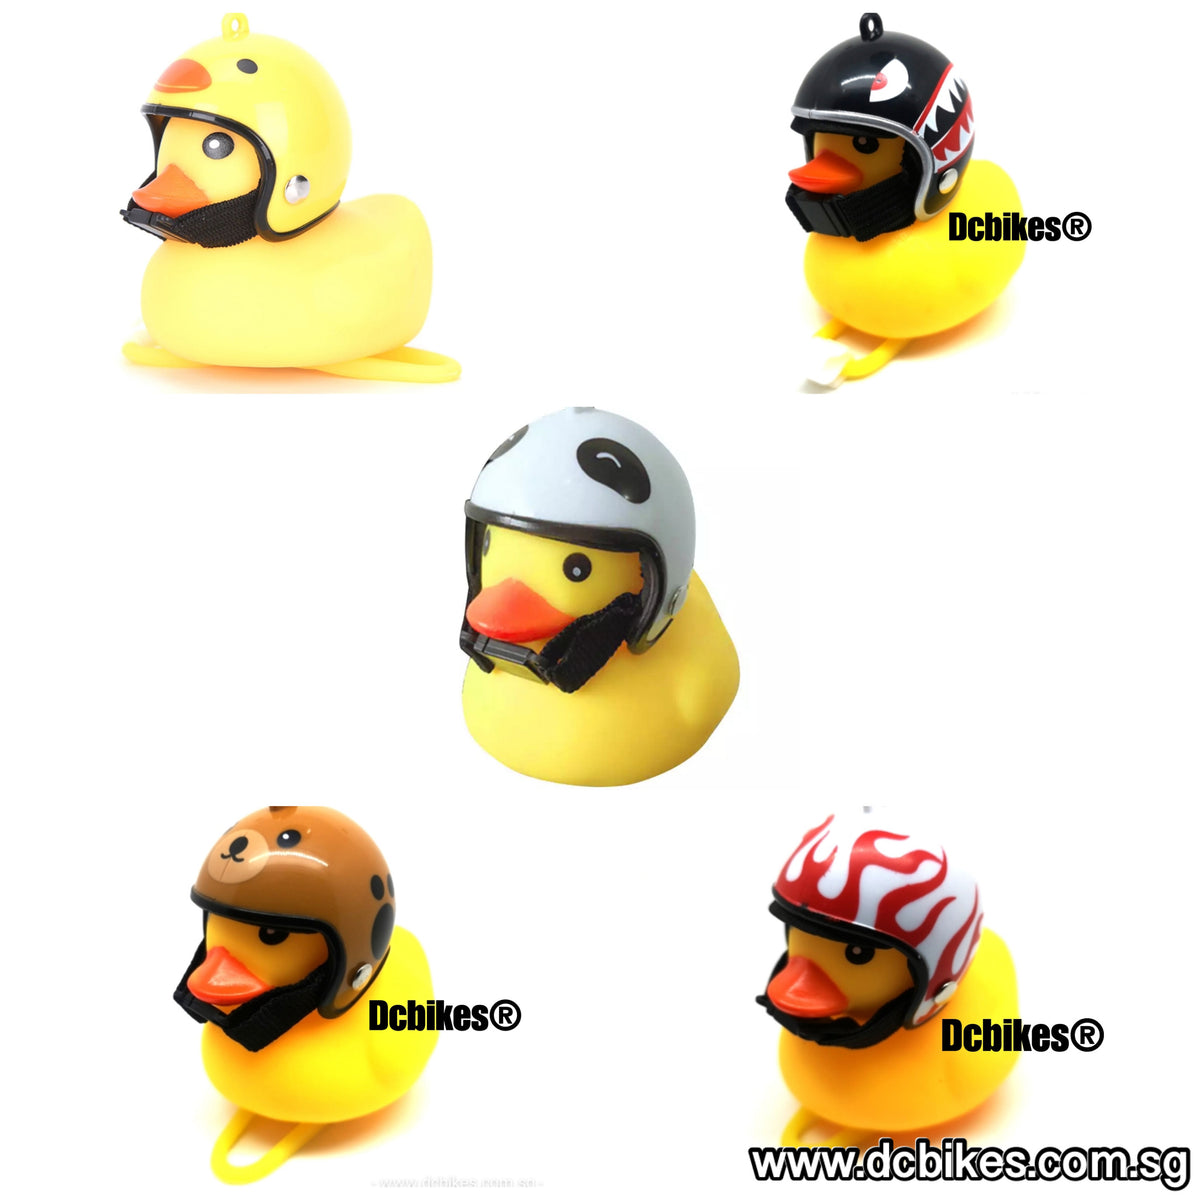 Racer Rubber Duck with Black Helmet